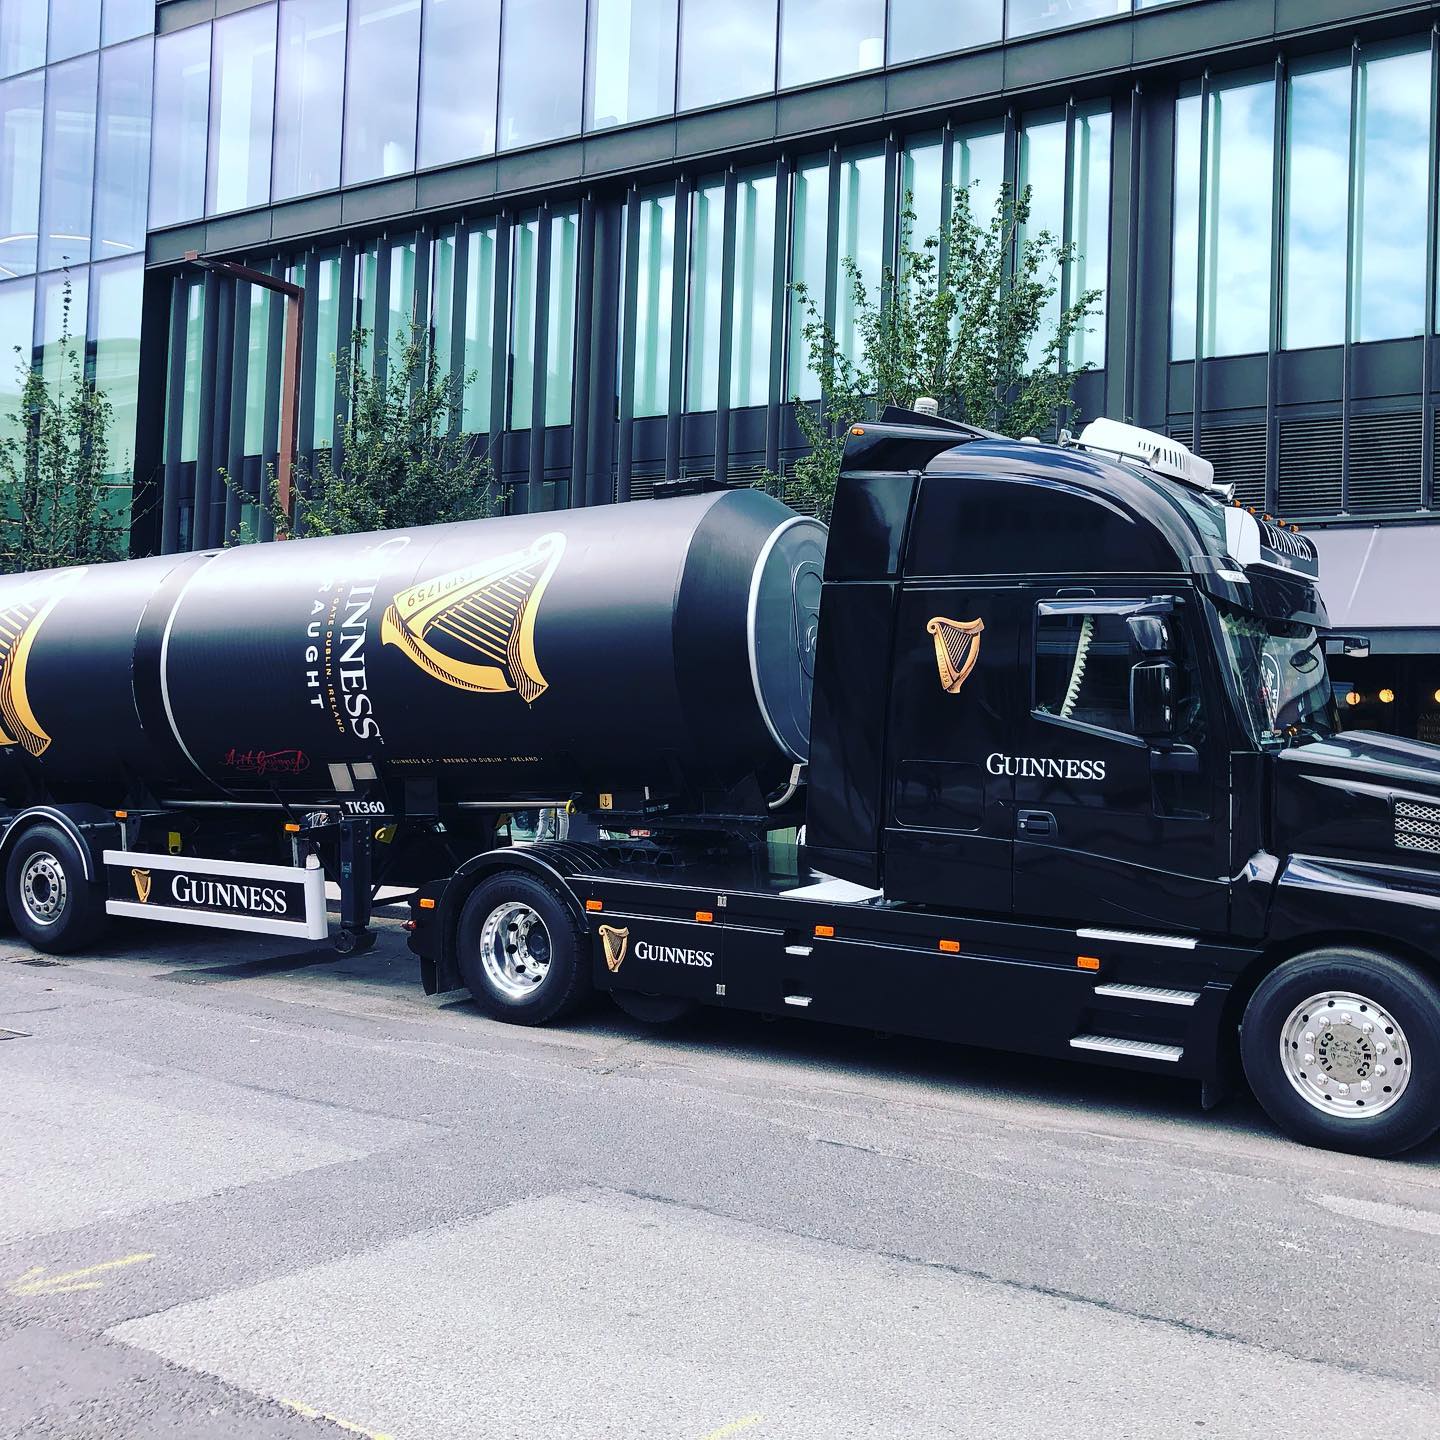 Guinnes truck in Dublin